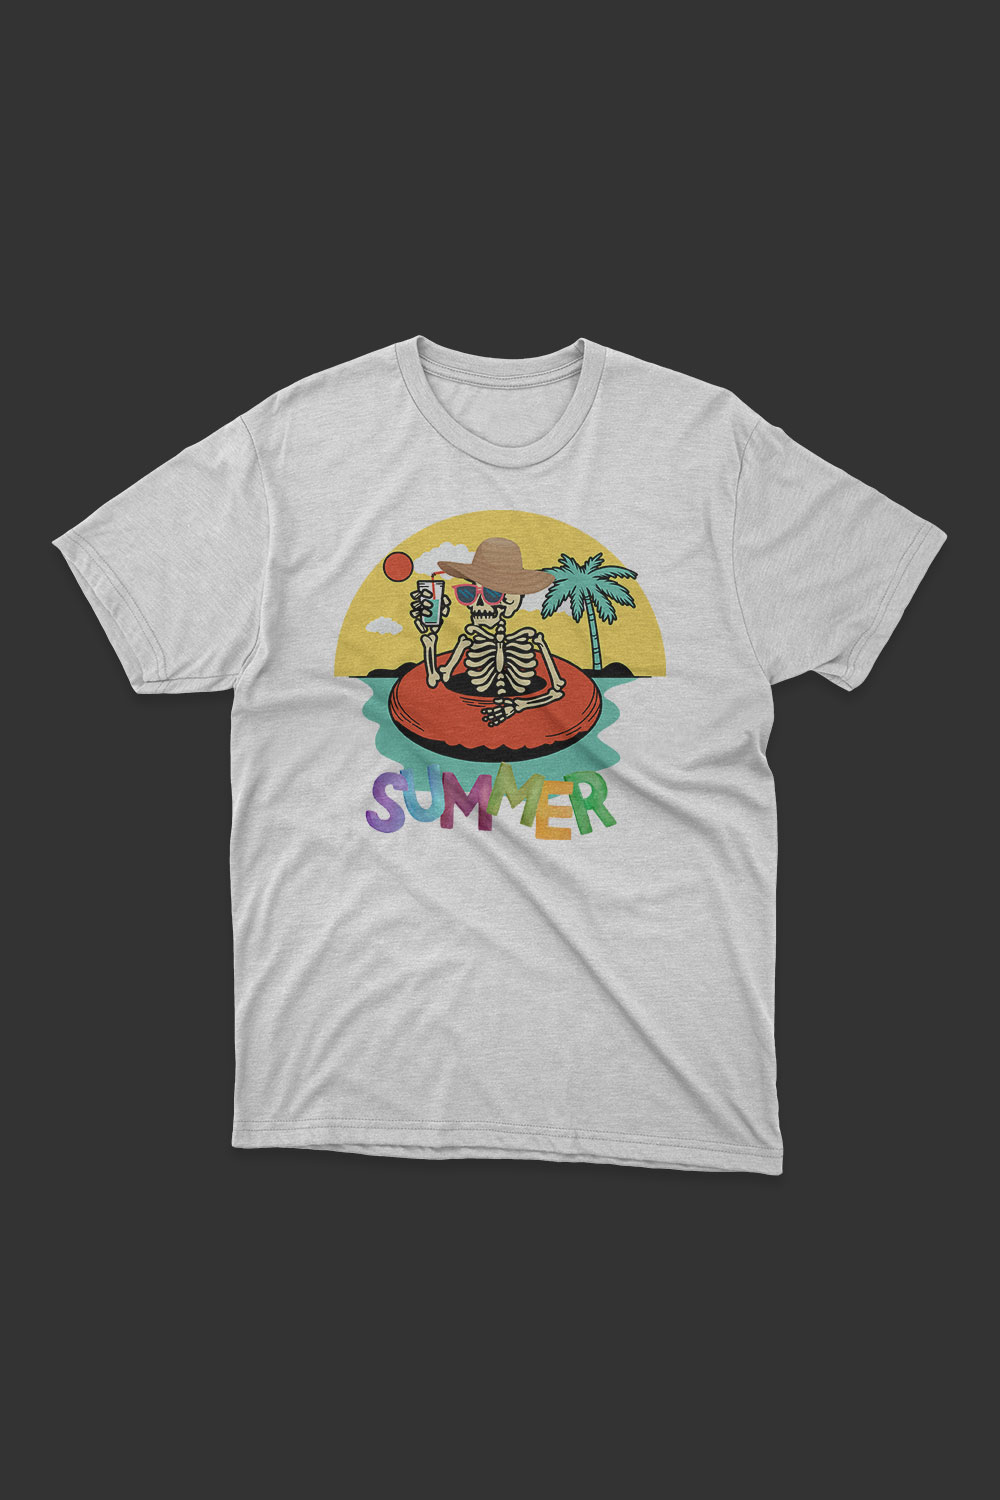 Summer T Shirt Design pinterest preview image.